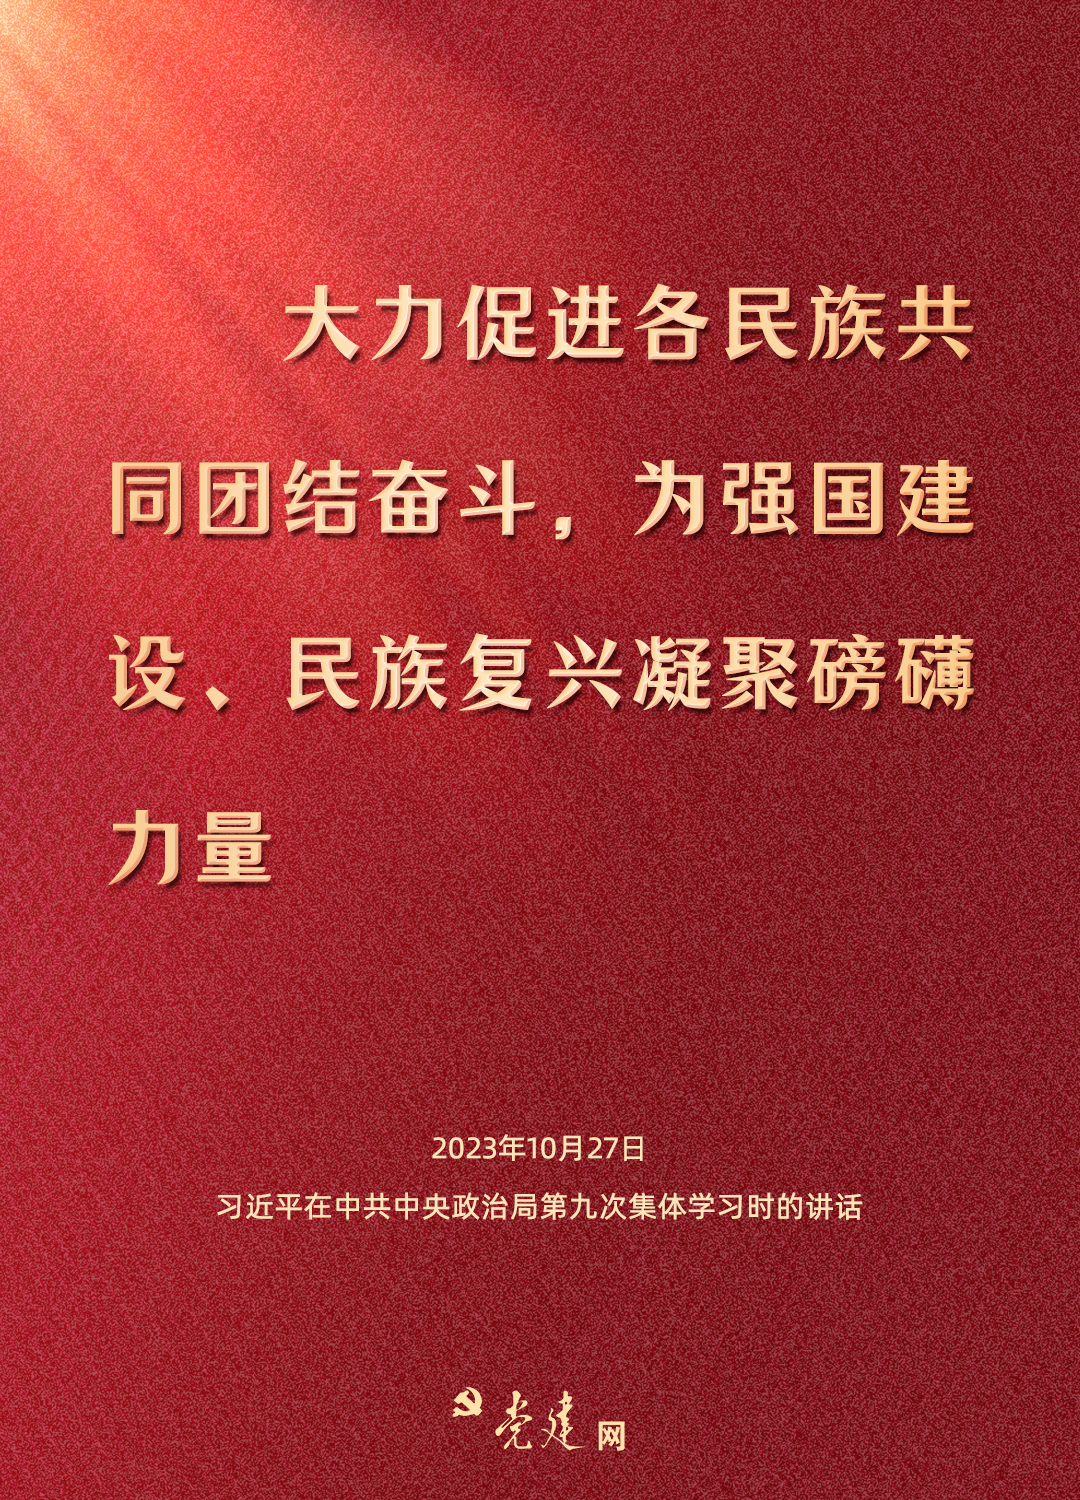 铸牢中华民族共同体意识，总书记这样强调4.png